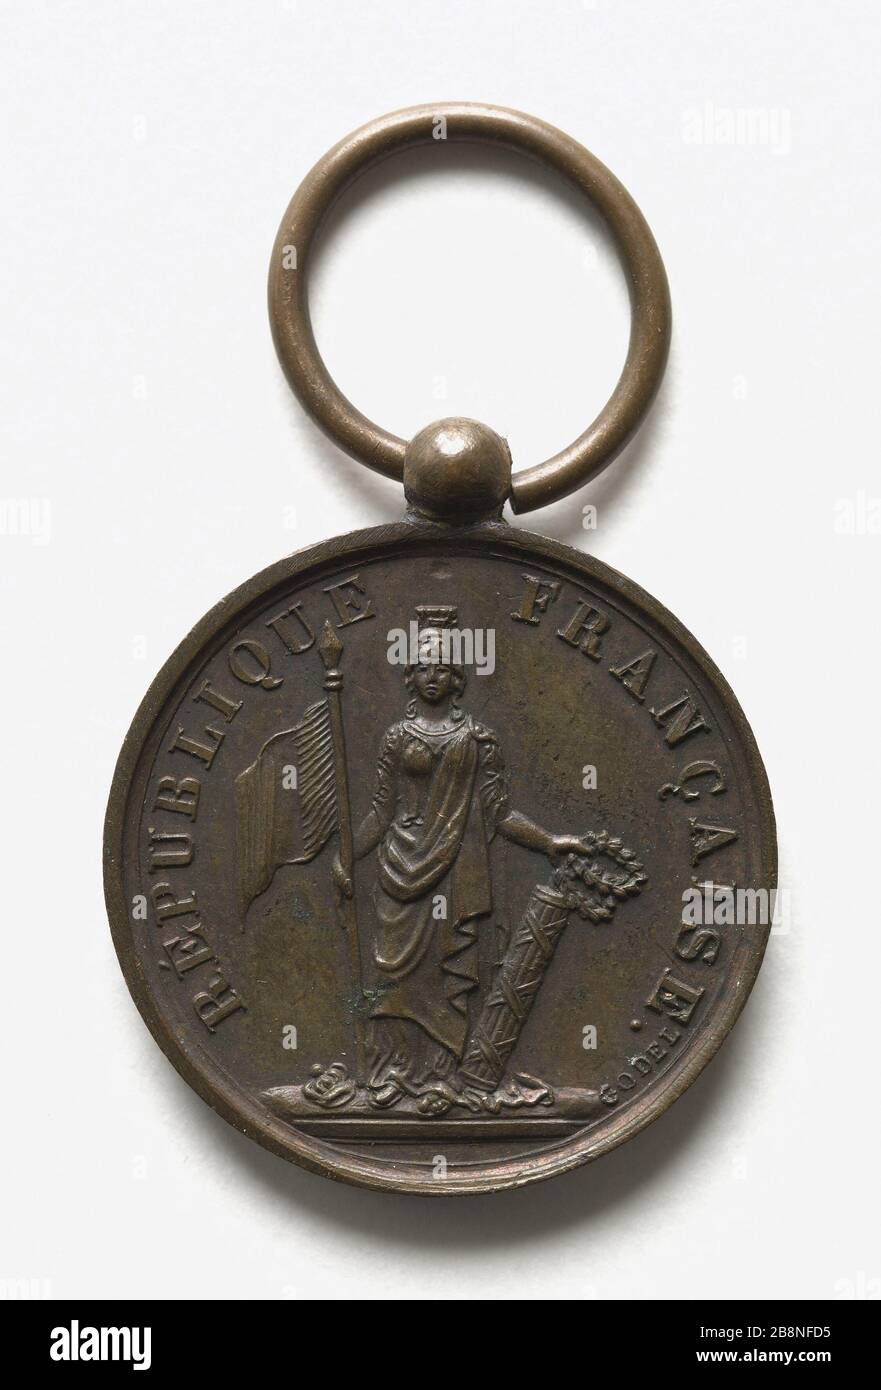 Medal awarded by the Ministry of Interior, s. d. Godel. Médaille décernée par le ministère de l'Intérieur. Cuivre. 1848. Paris, musée Carnavalet. Stock Photo